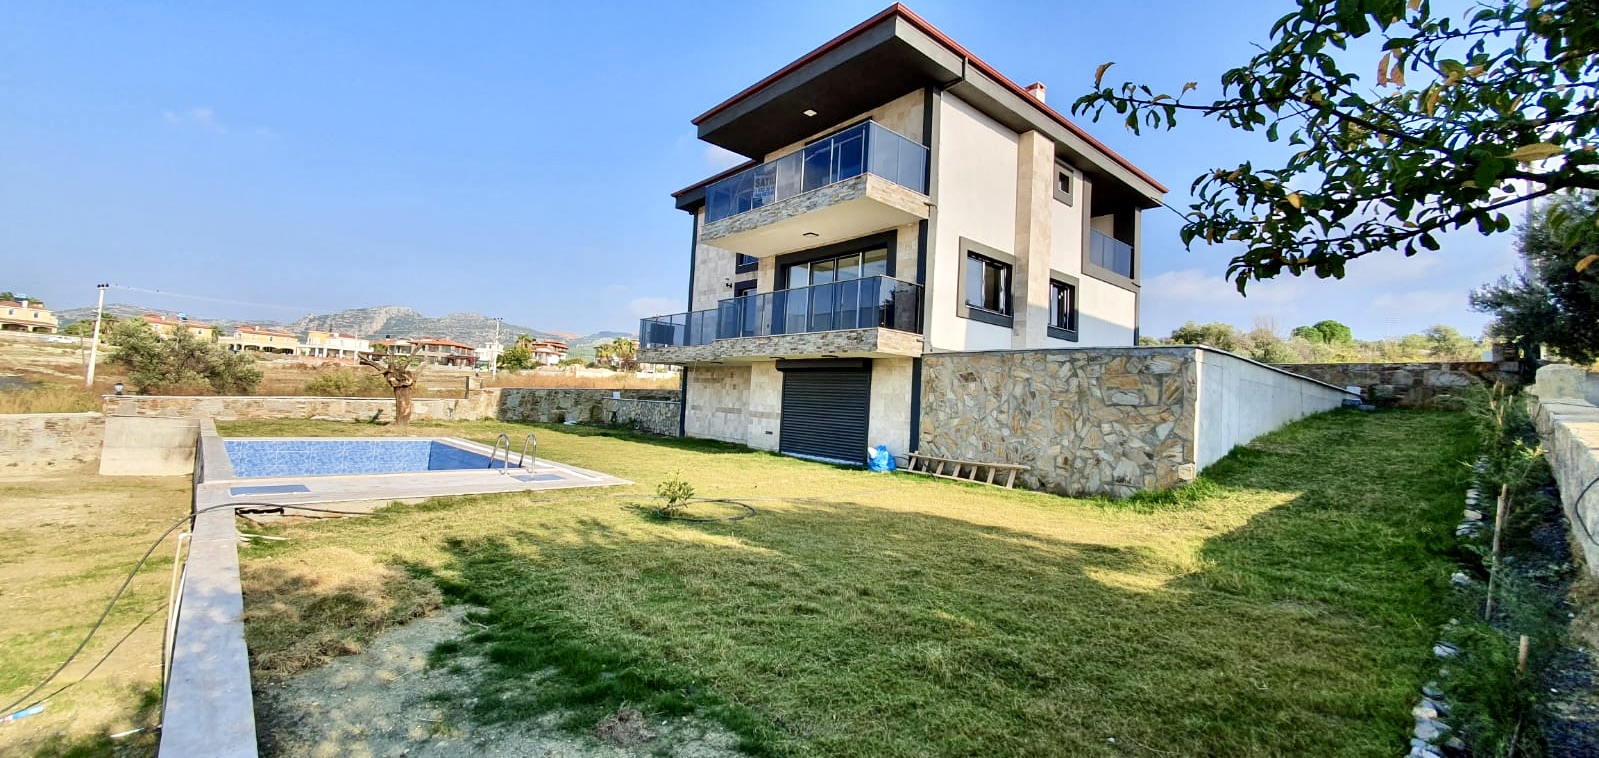 Luxuriöse Neubau-Villa mit 405 m² Wohnfläche und Swimmingpool in der sonnigen Ägäis (Türkei)